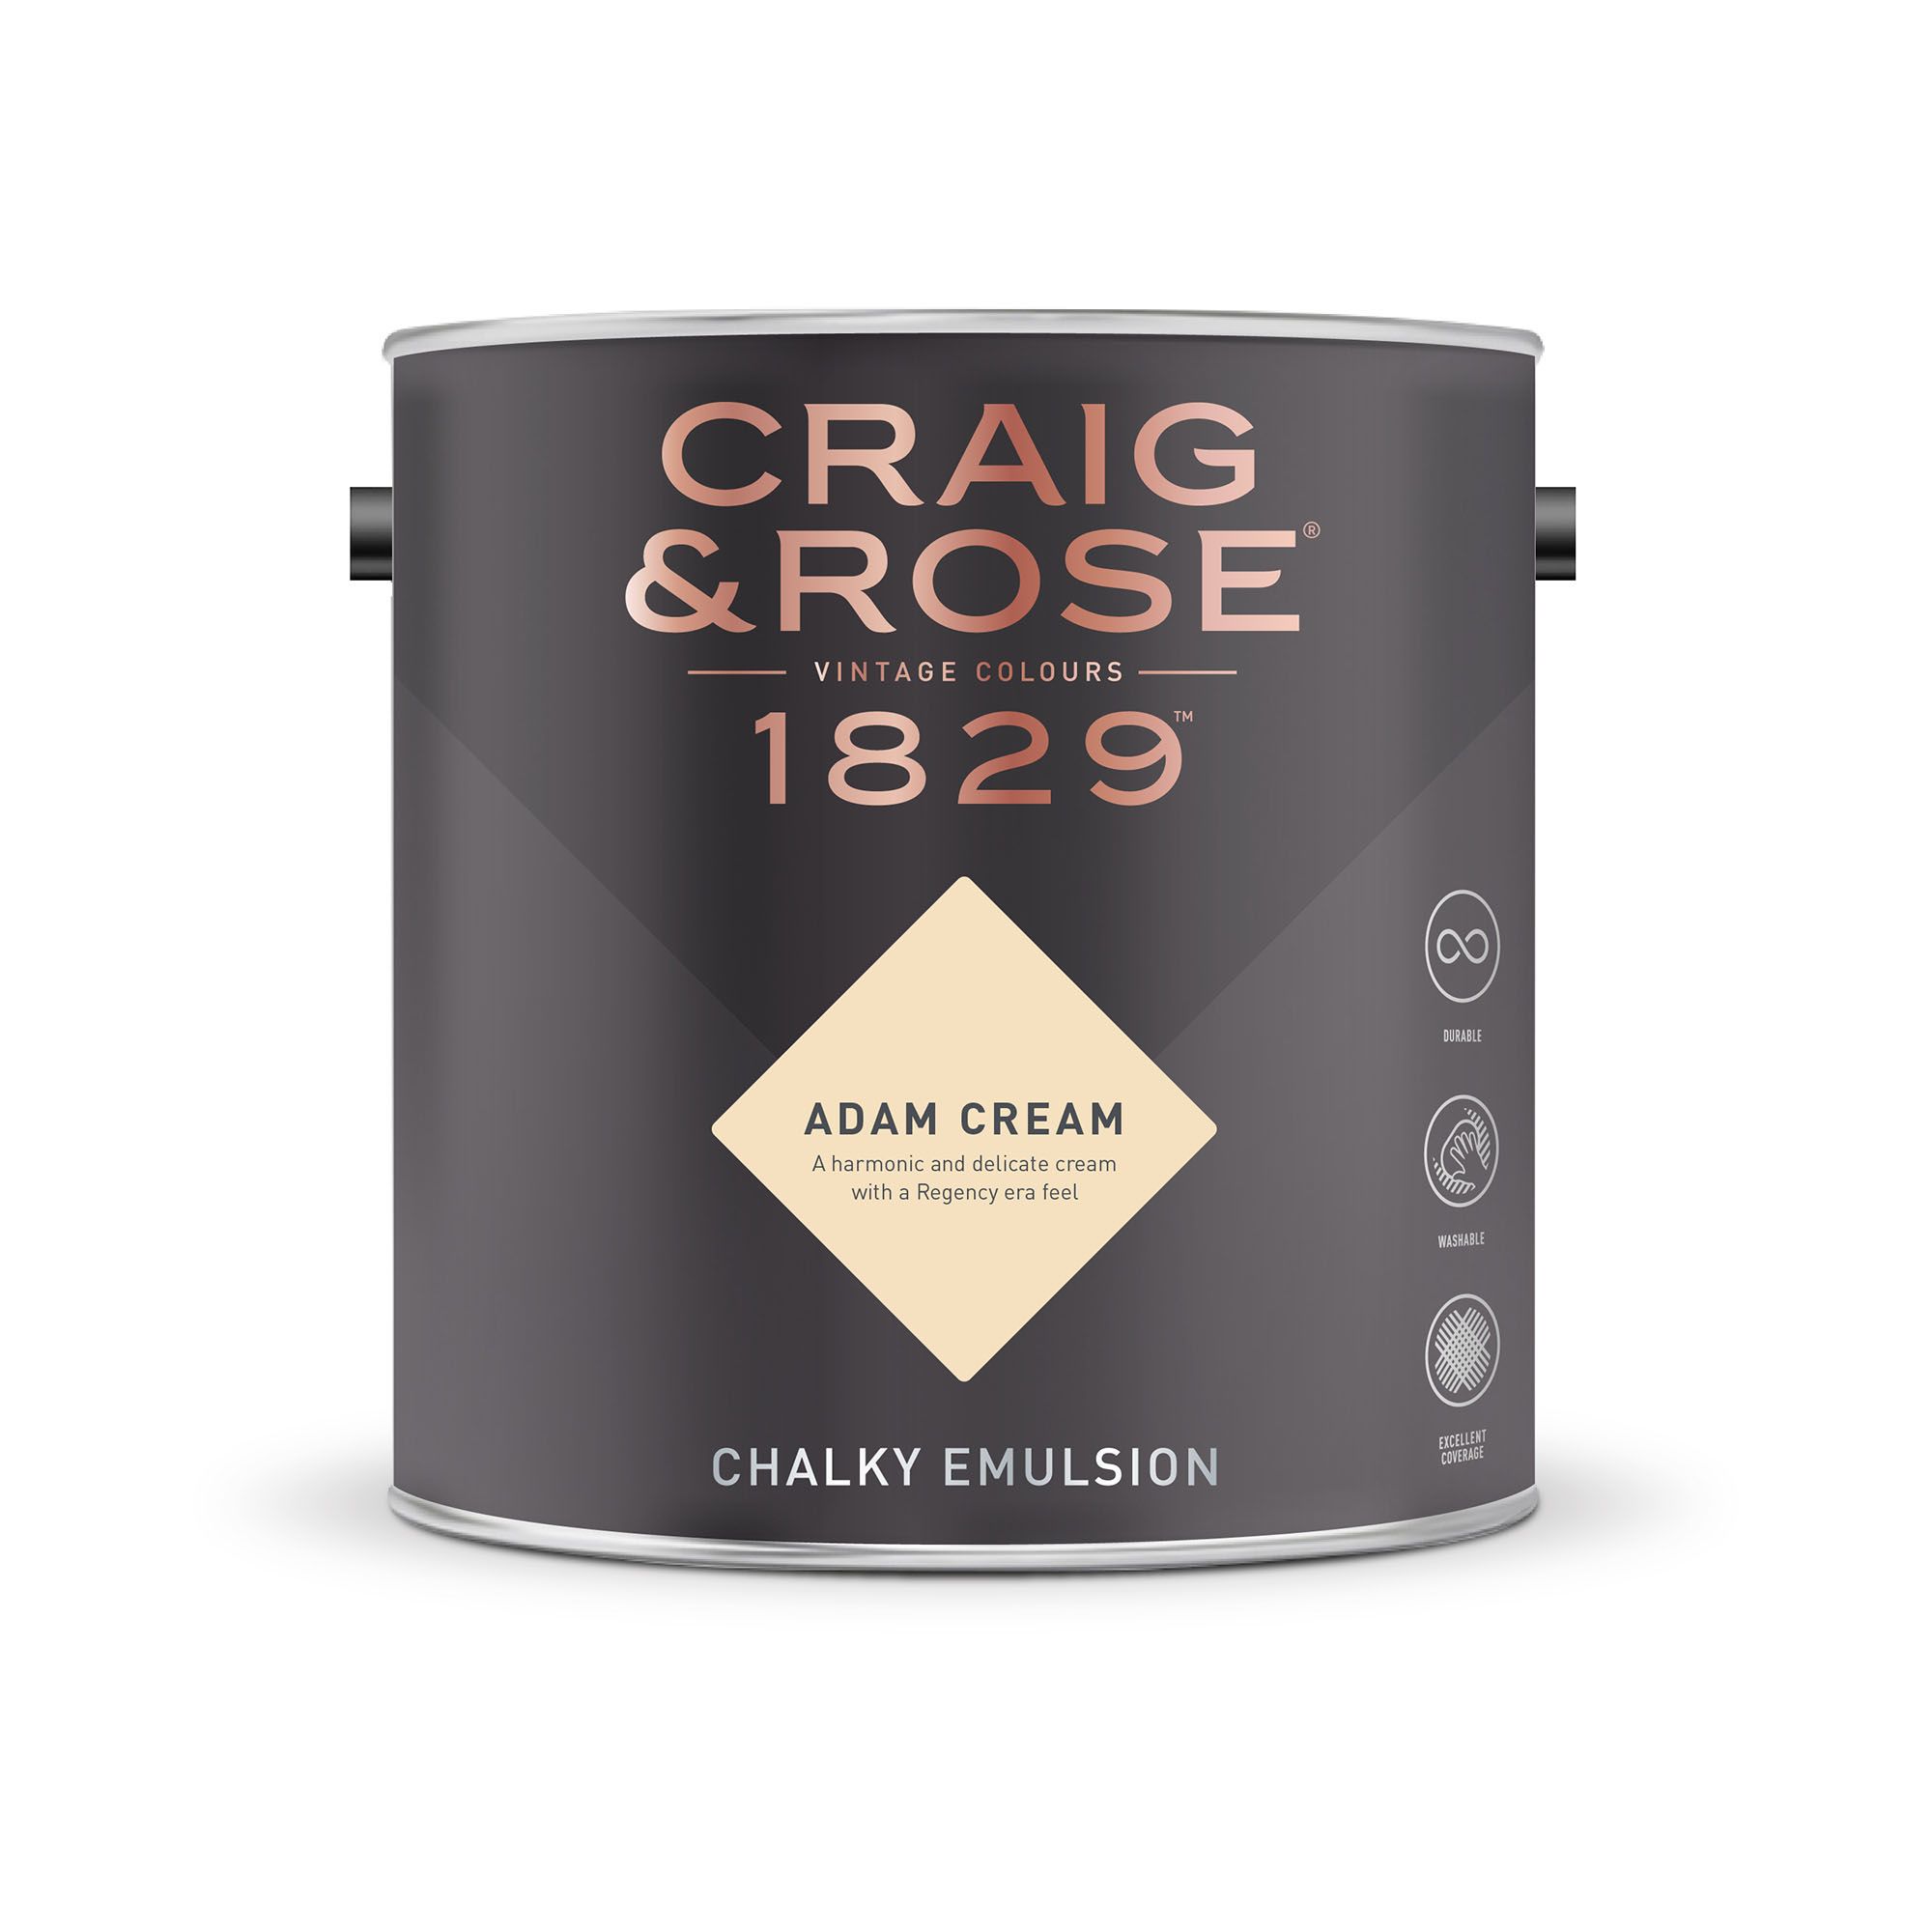 Craig & Rose 1829 Adam Cream Chalky Emulsion paint, 2.5L